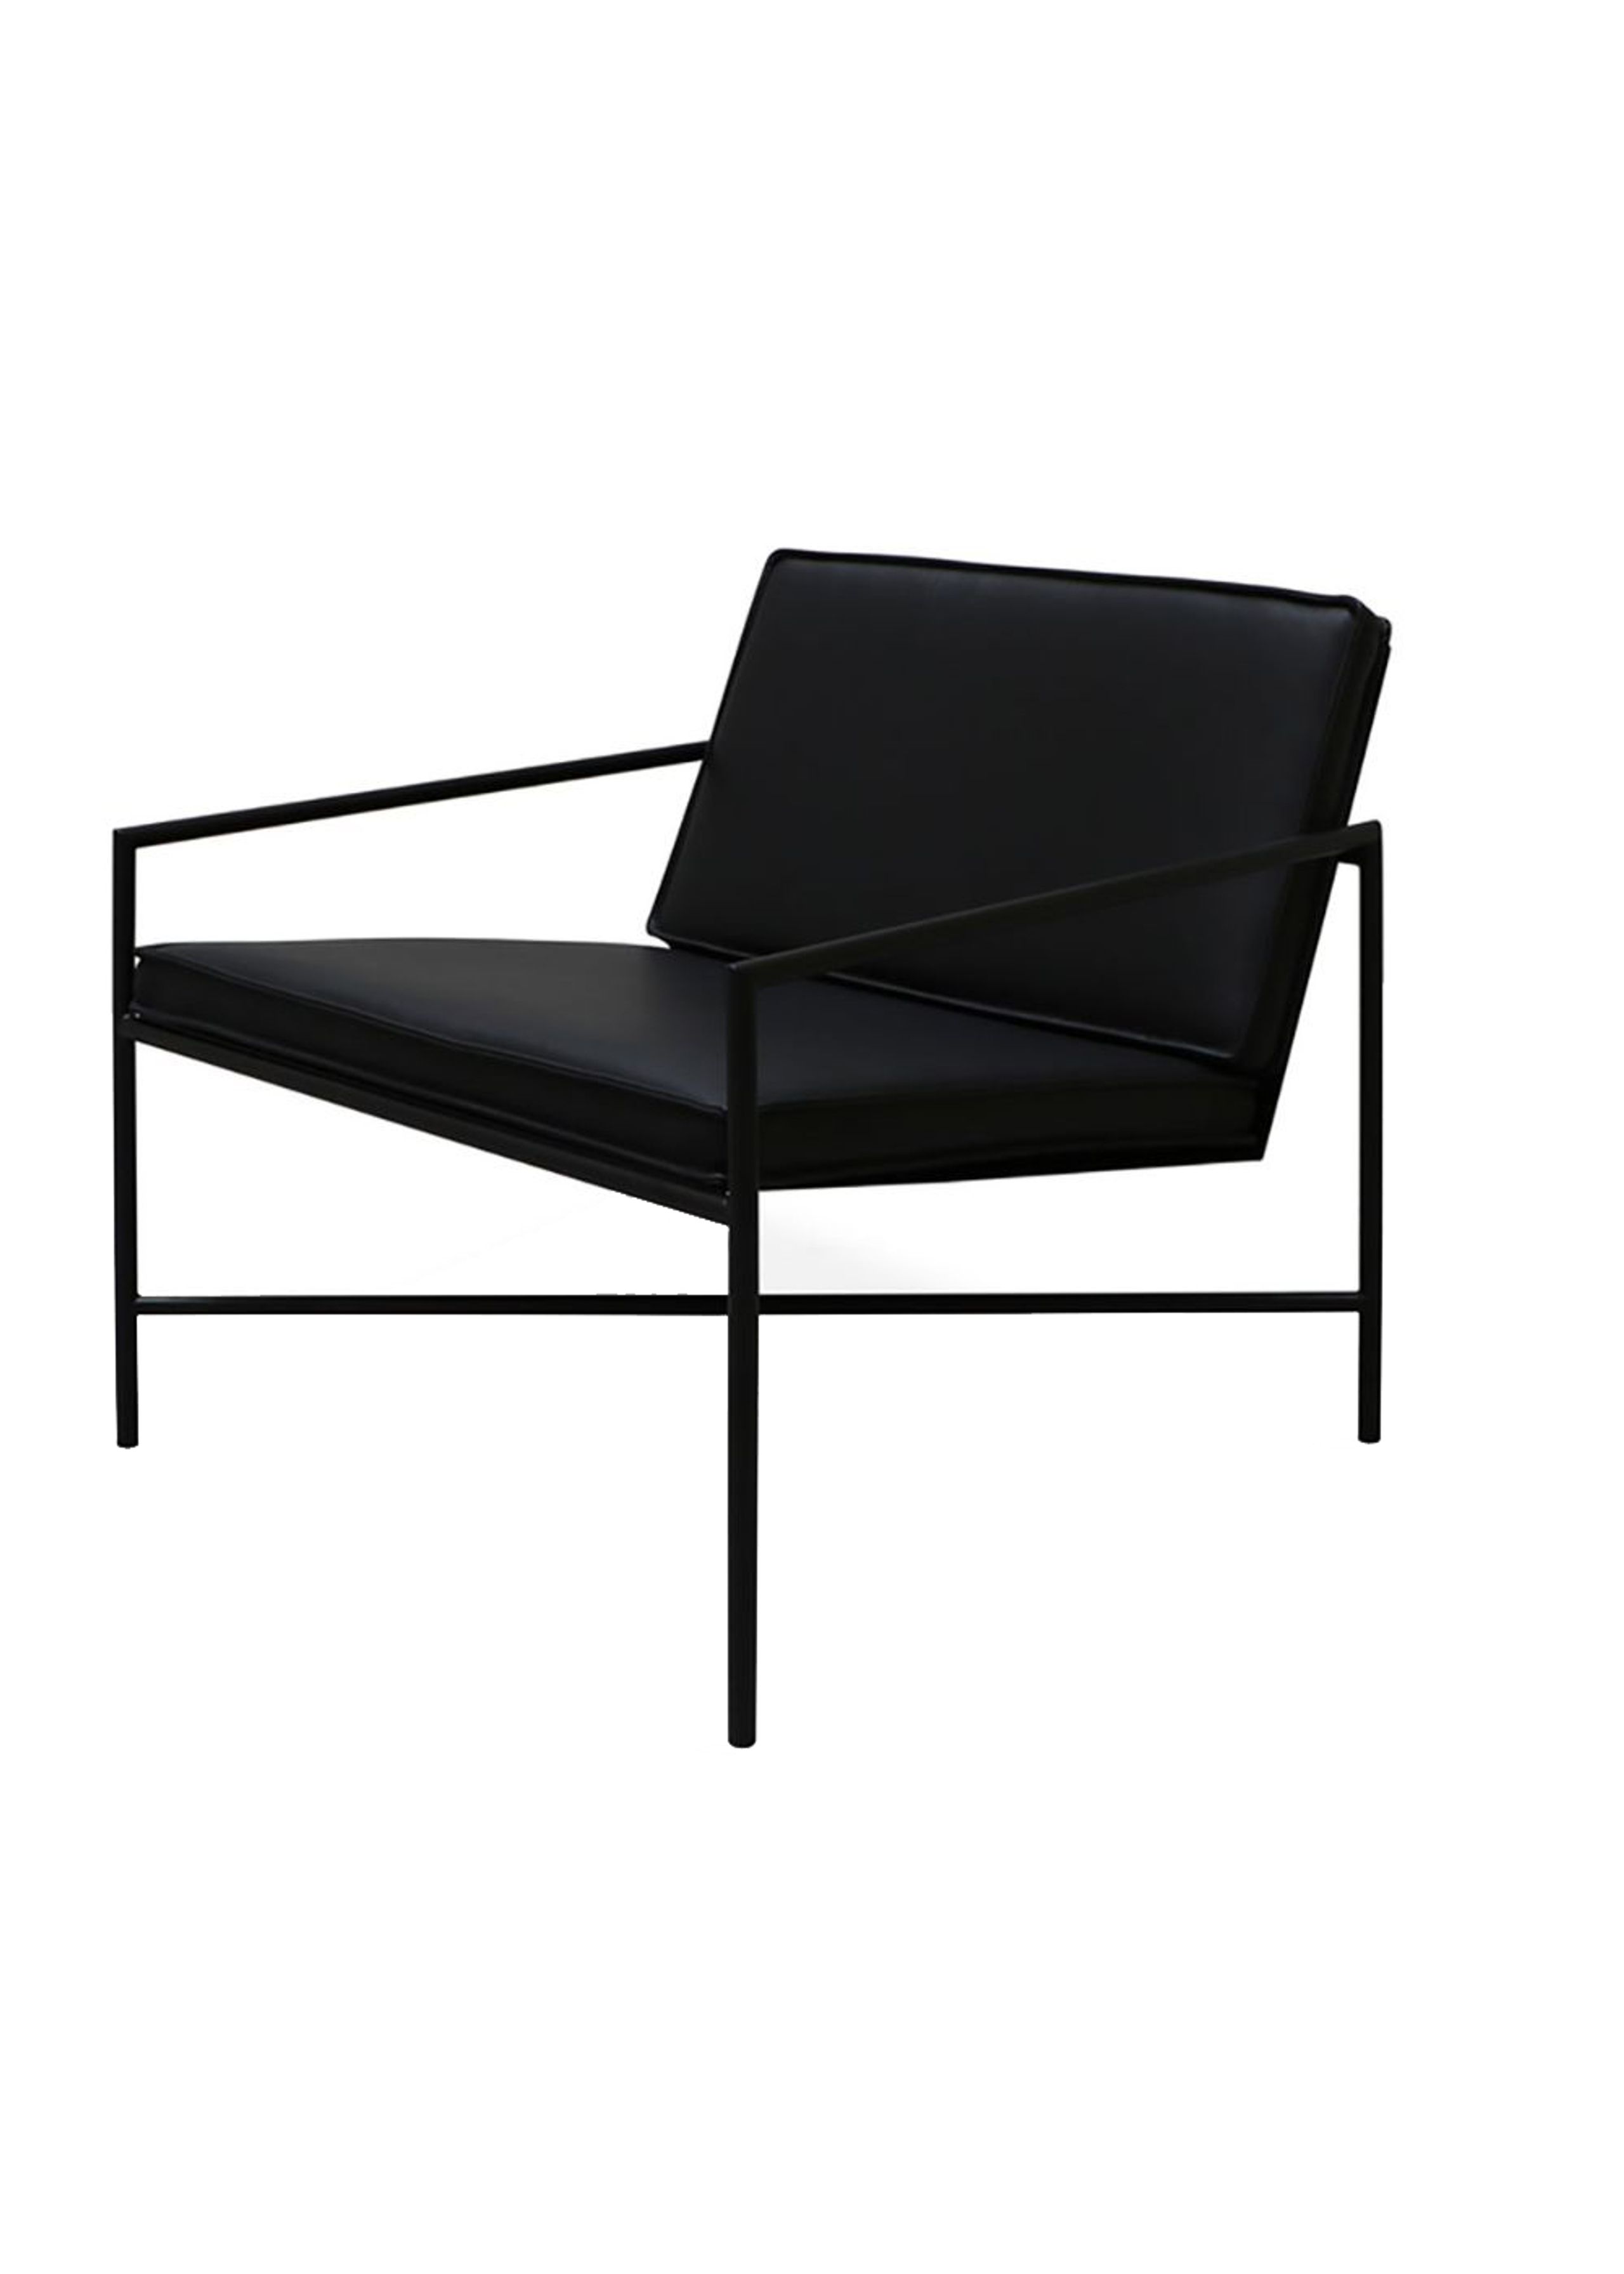 Handvärk - Lænestol - Lounge Chair af Emil Thorup - Black / Black Leather